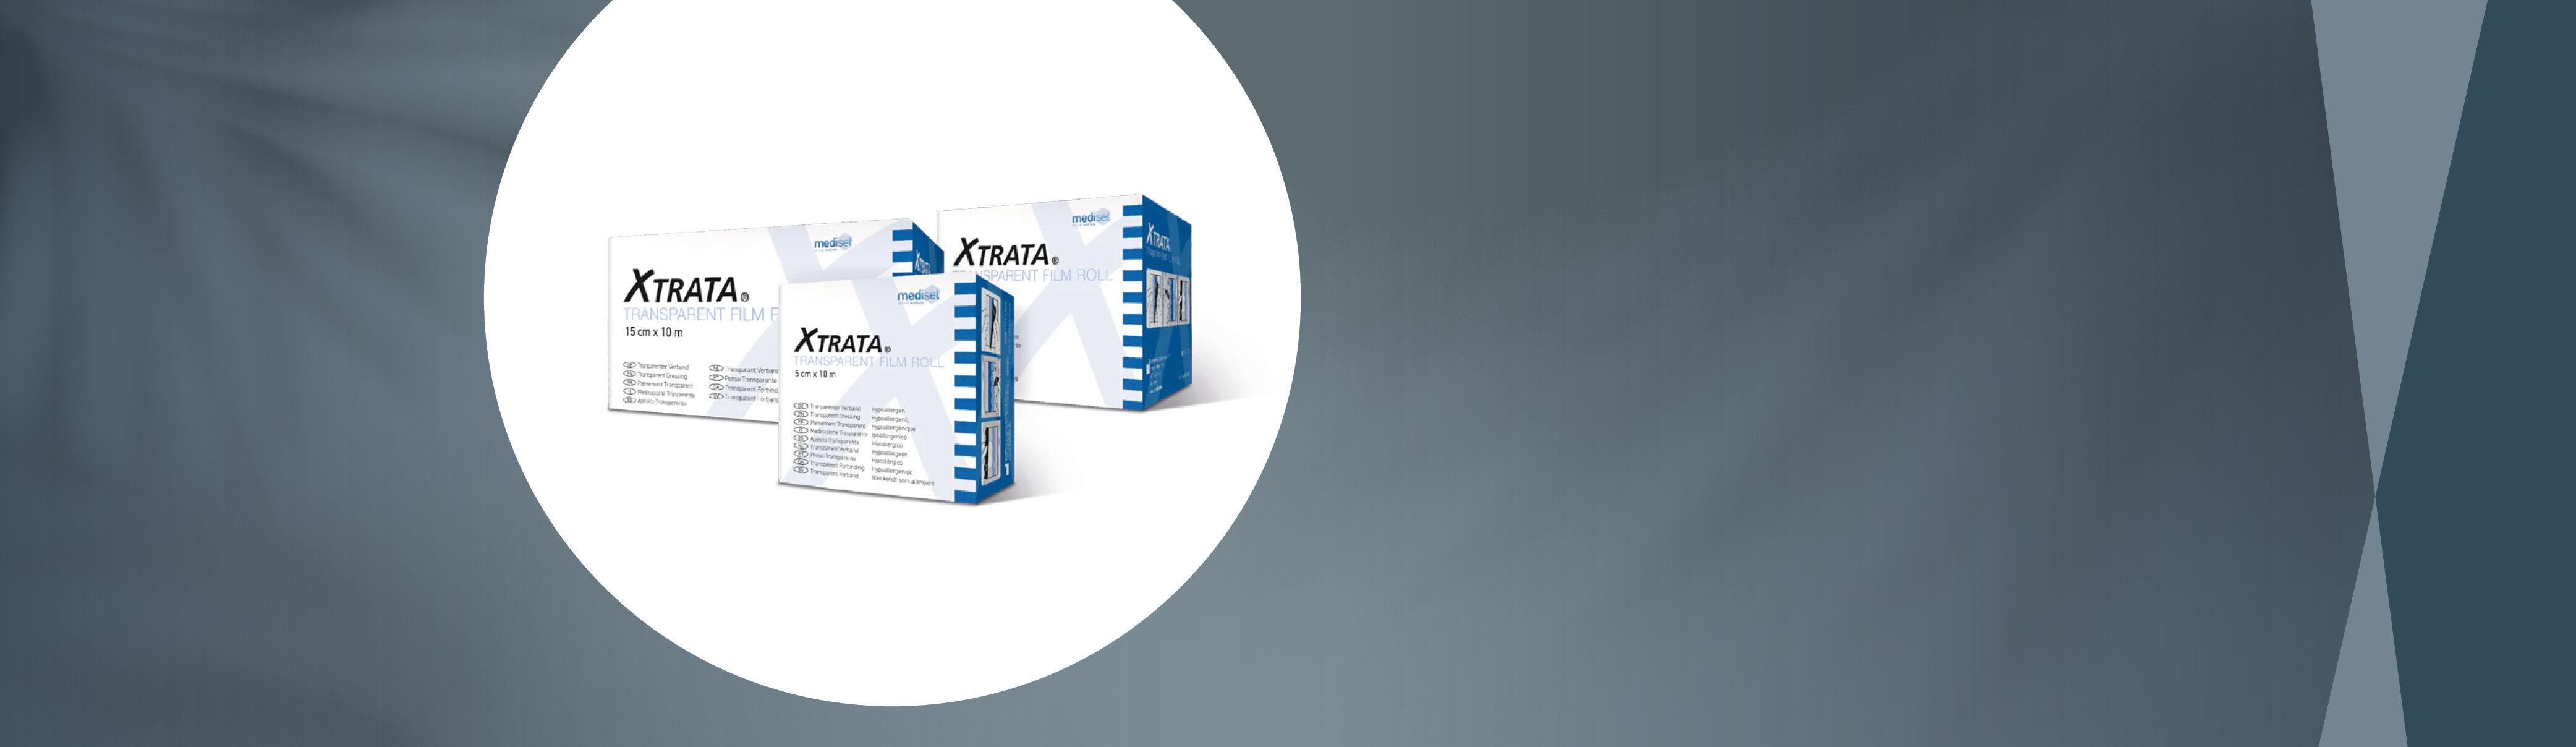 Im Fokus die drei verschiedenen Verpackungsgrößen des Produktes Xtrata® von mediset clinical products, stehend als Gruppe.